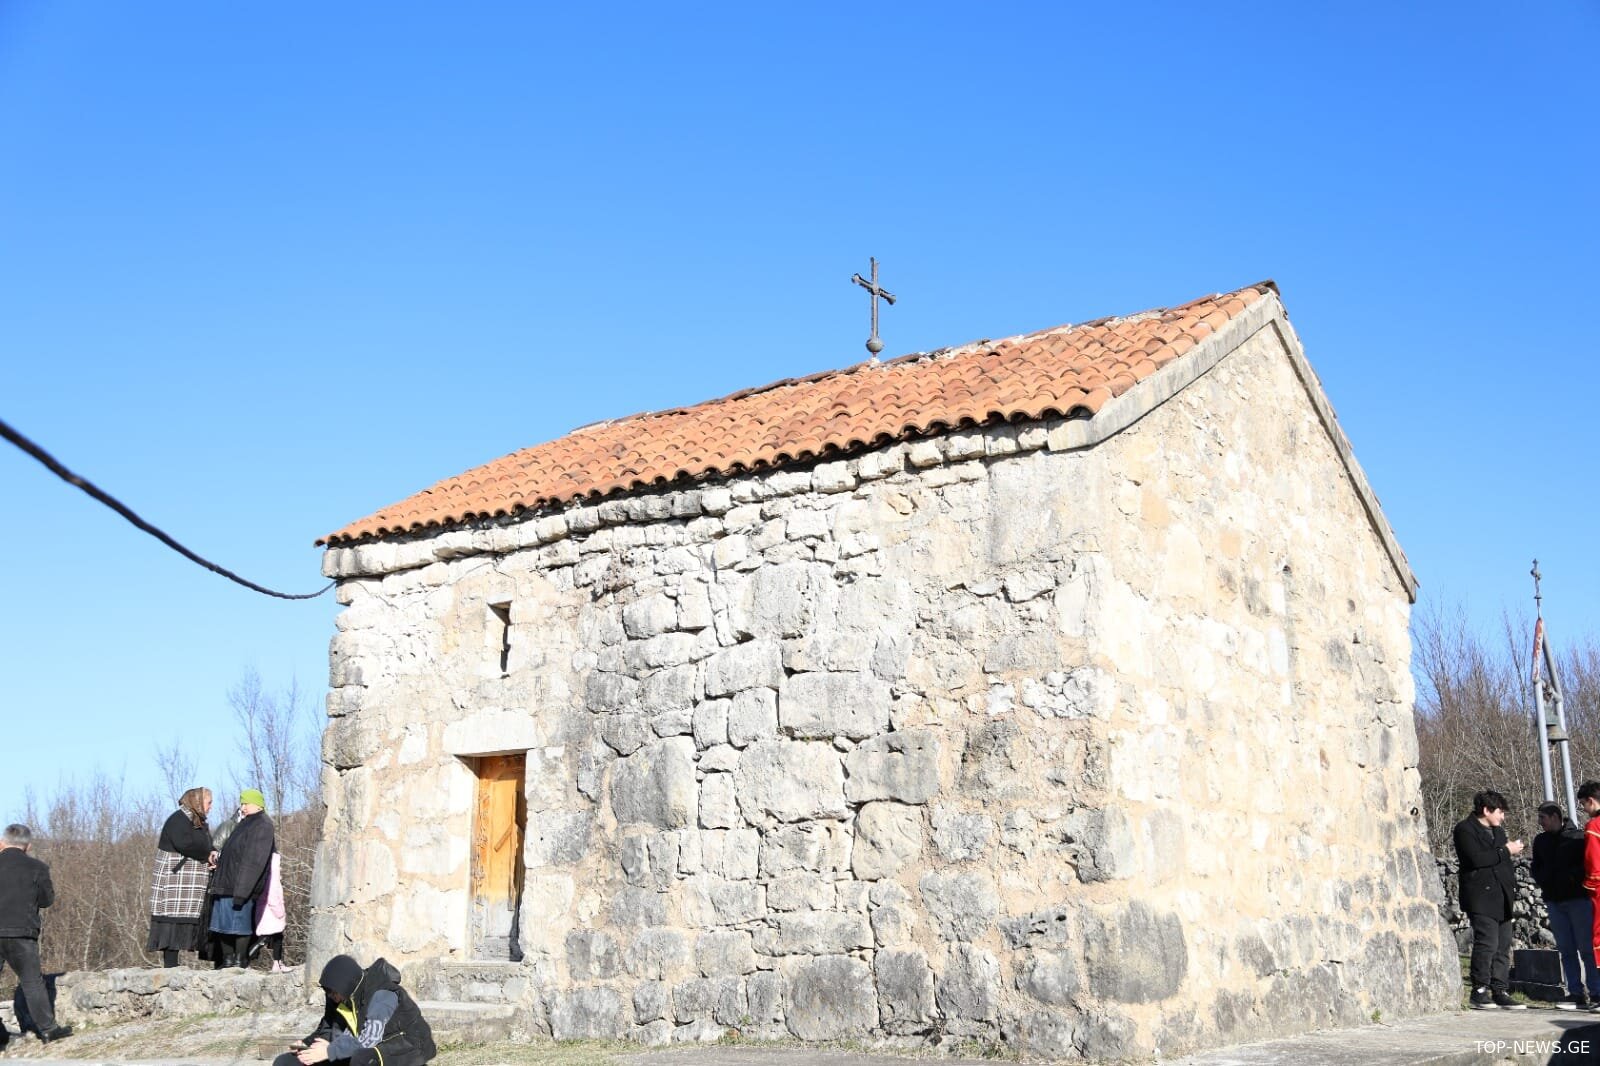 წყალტუბოს სოფელ ყუმისთავში წმინდა ნინოს სახელობის ეკლესია აკურთხეს